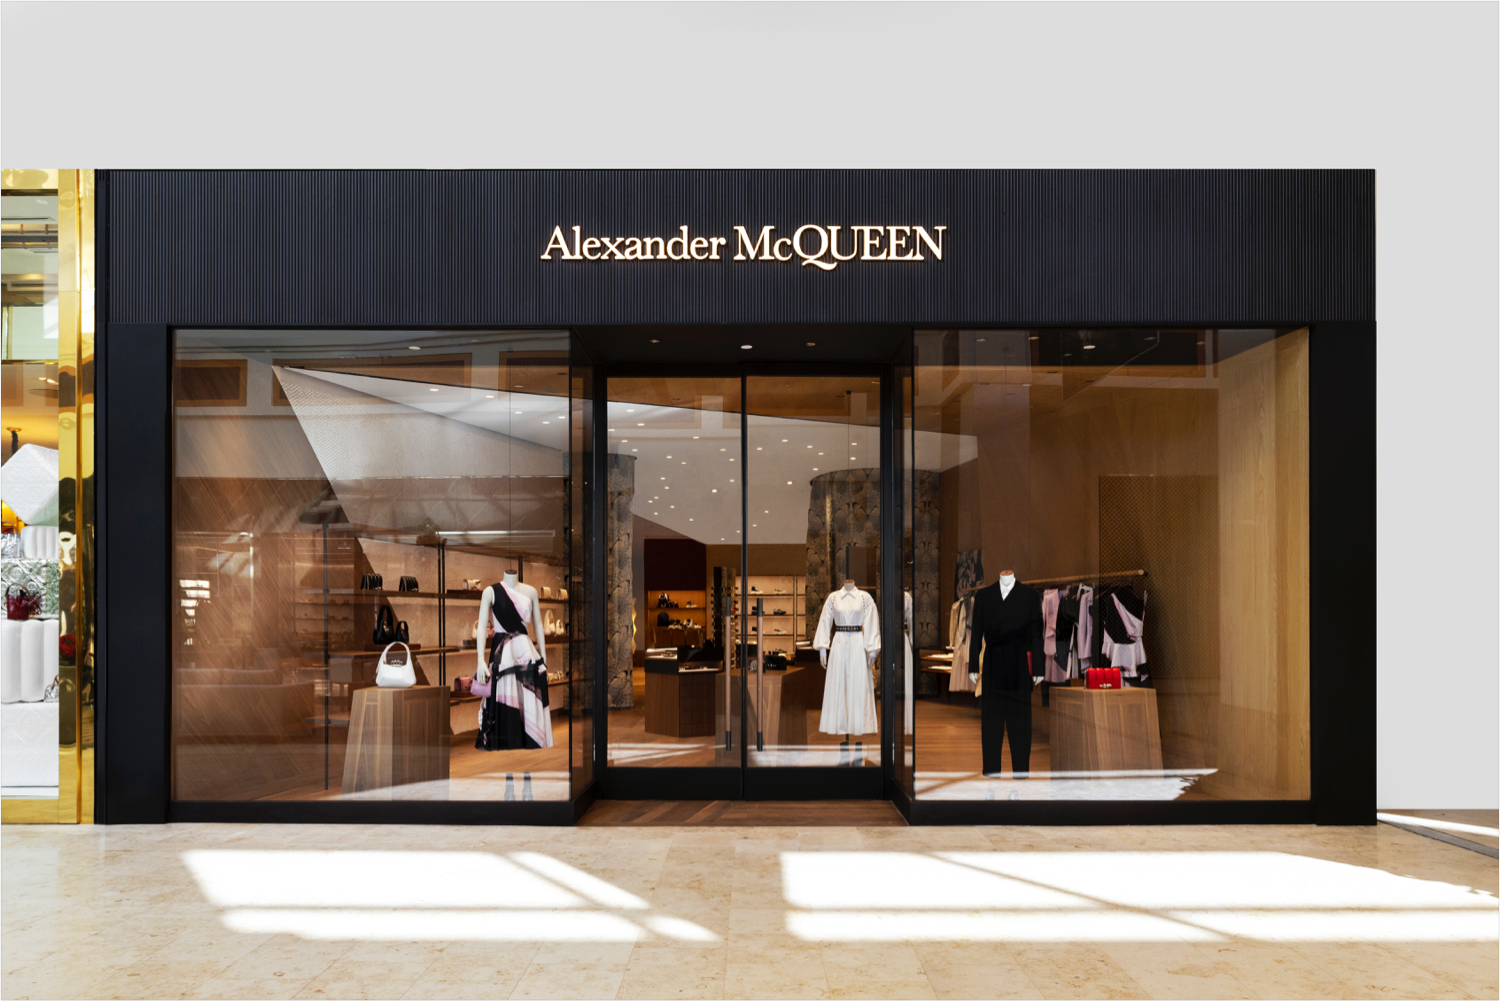 Amsterdam: Alexander McQueen store opening